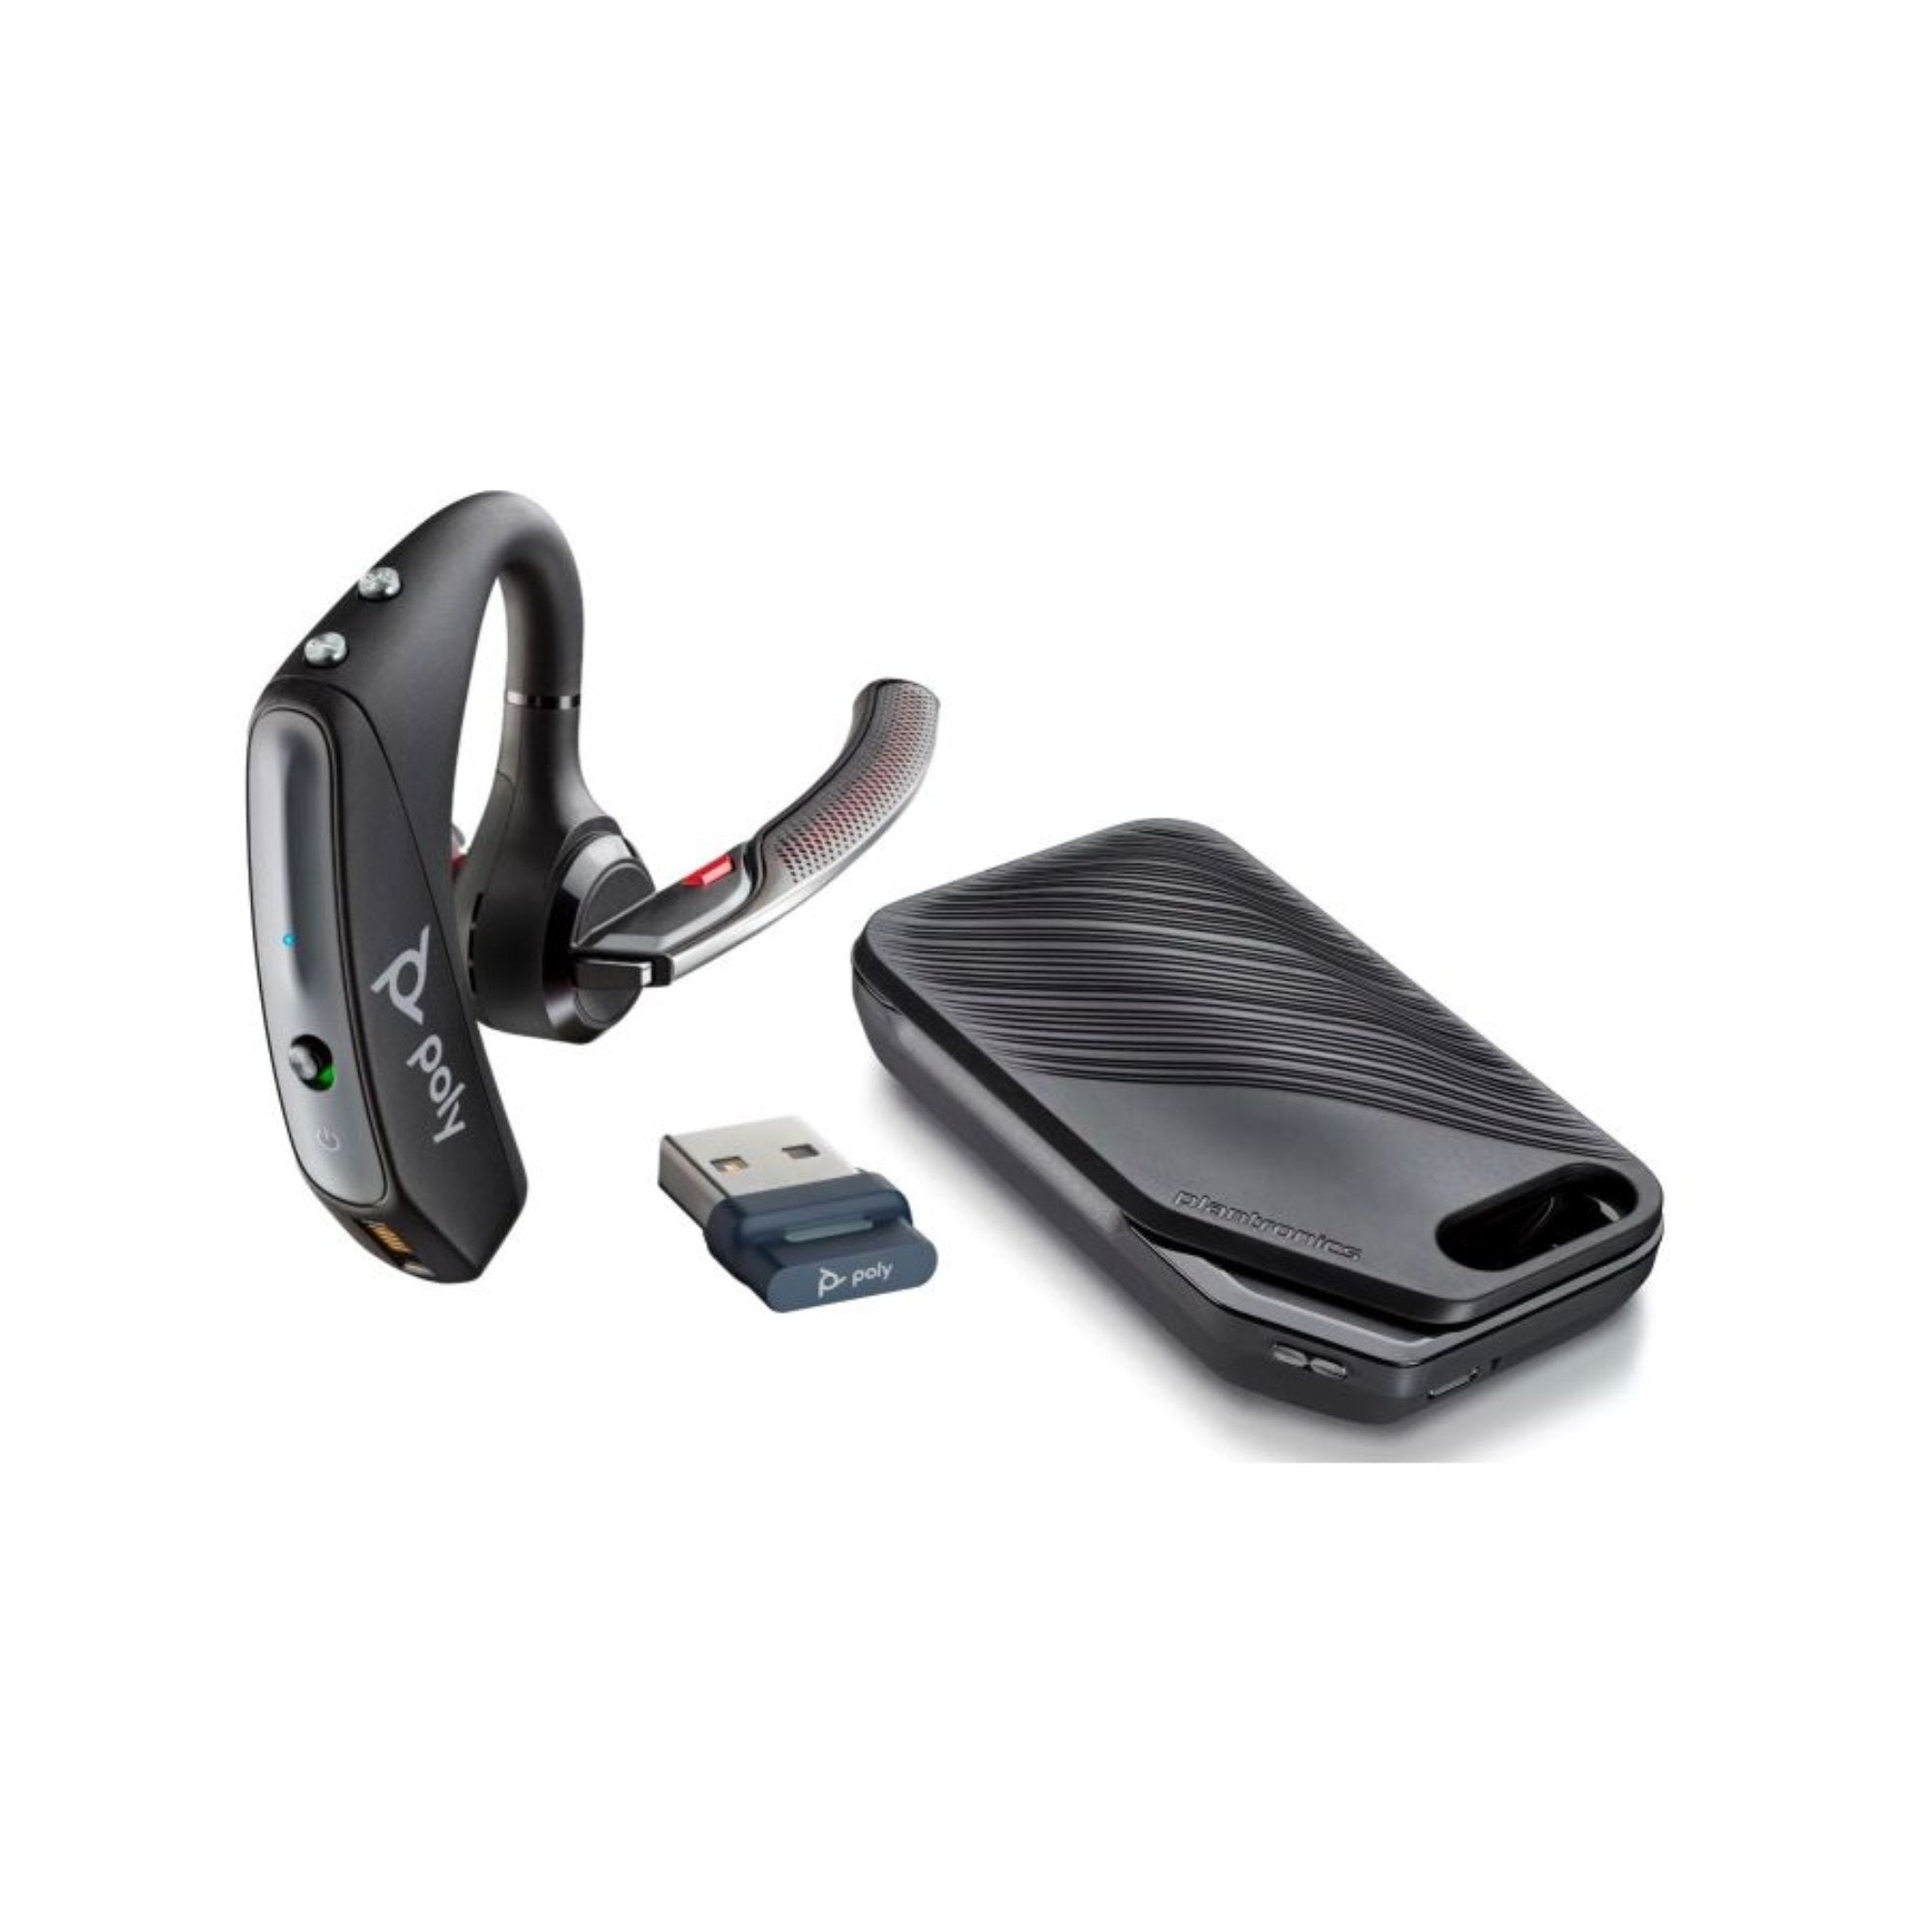 Excursie Doorbraak beneden Poly Voyager 5200 UC Bluetooth Headset With BT700